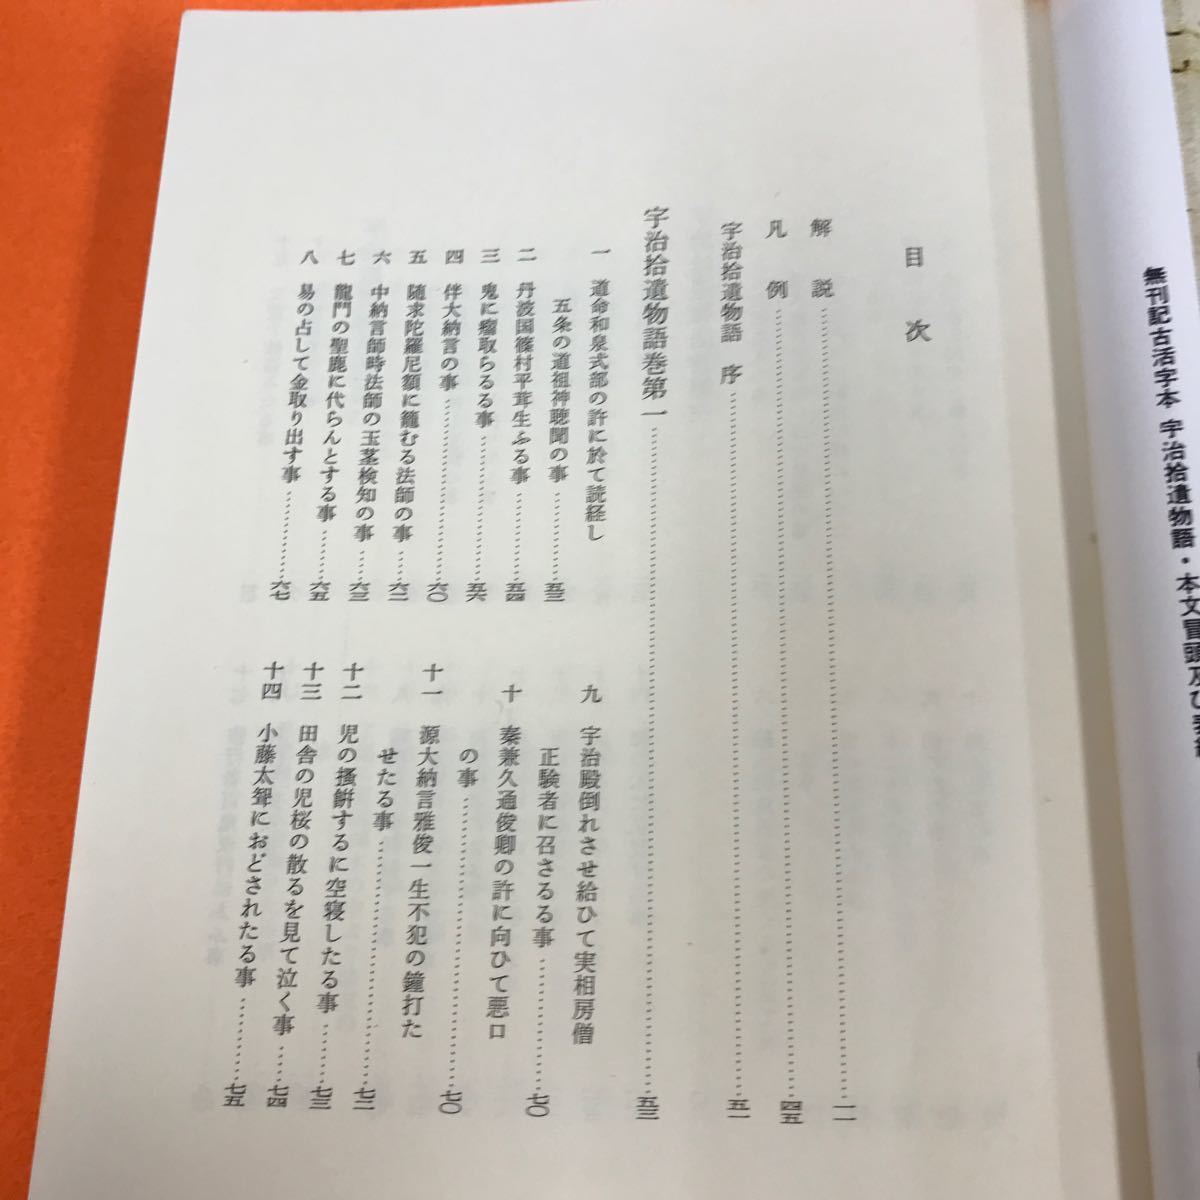 あ05-027 日本古典文学全集 28 宇治拾遺物語 小学館_画像4